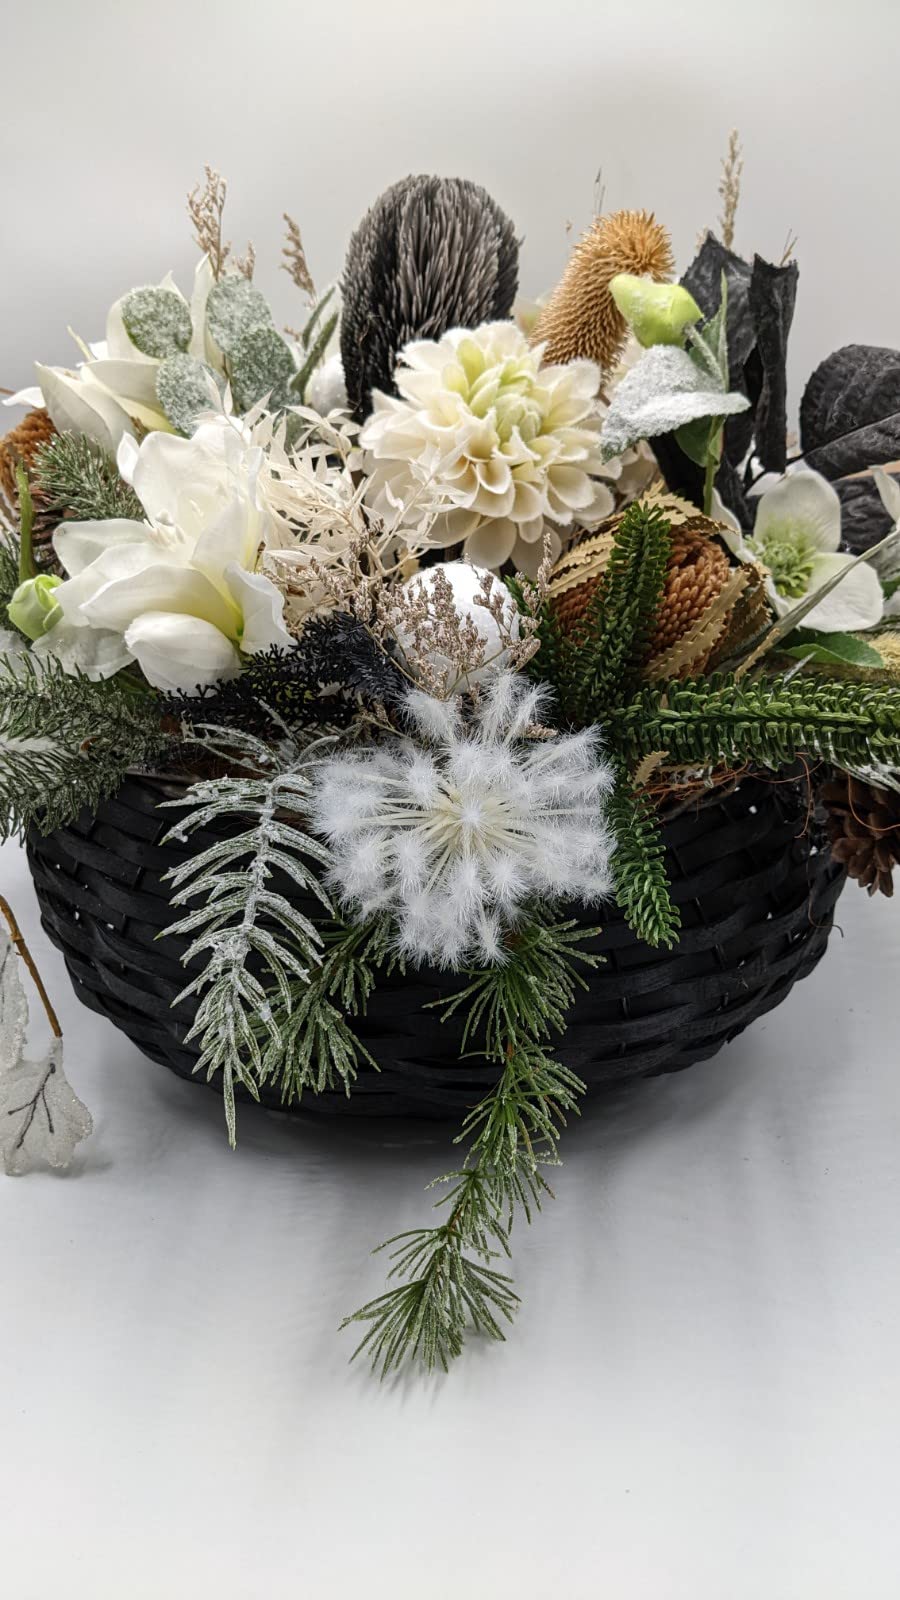 Wintergesteck Weihnachtsgesteck Kugel Amaryllis Beiwerk Tanne schwarz weiß